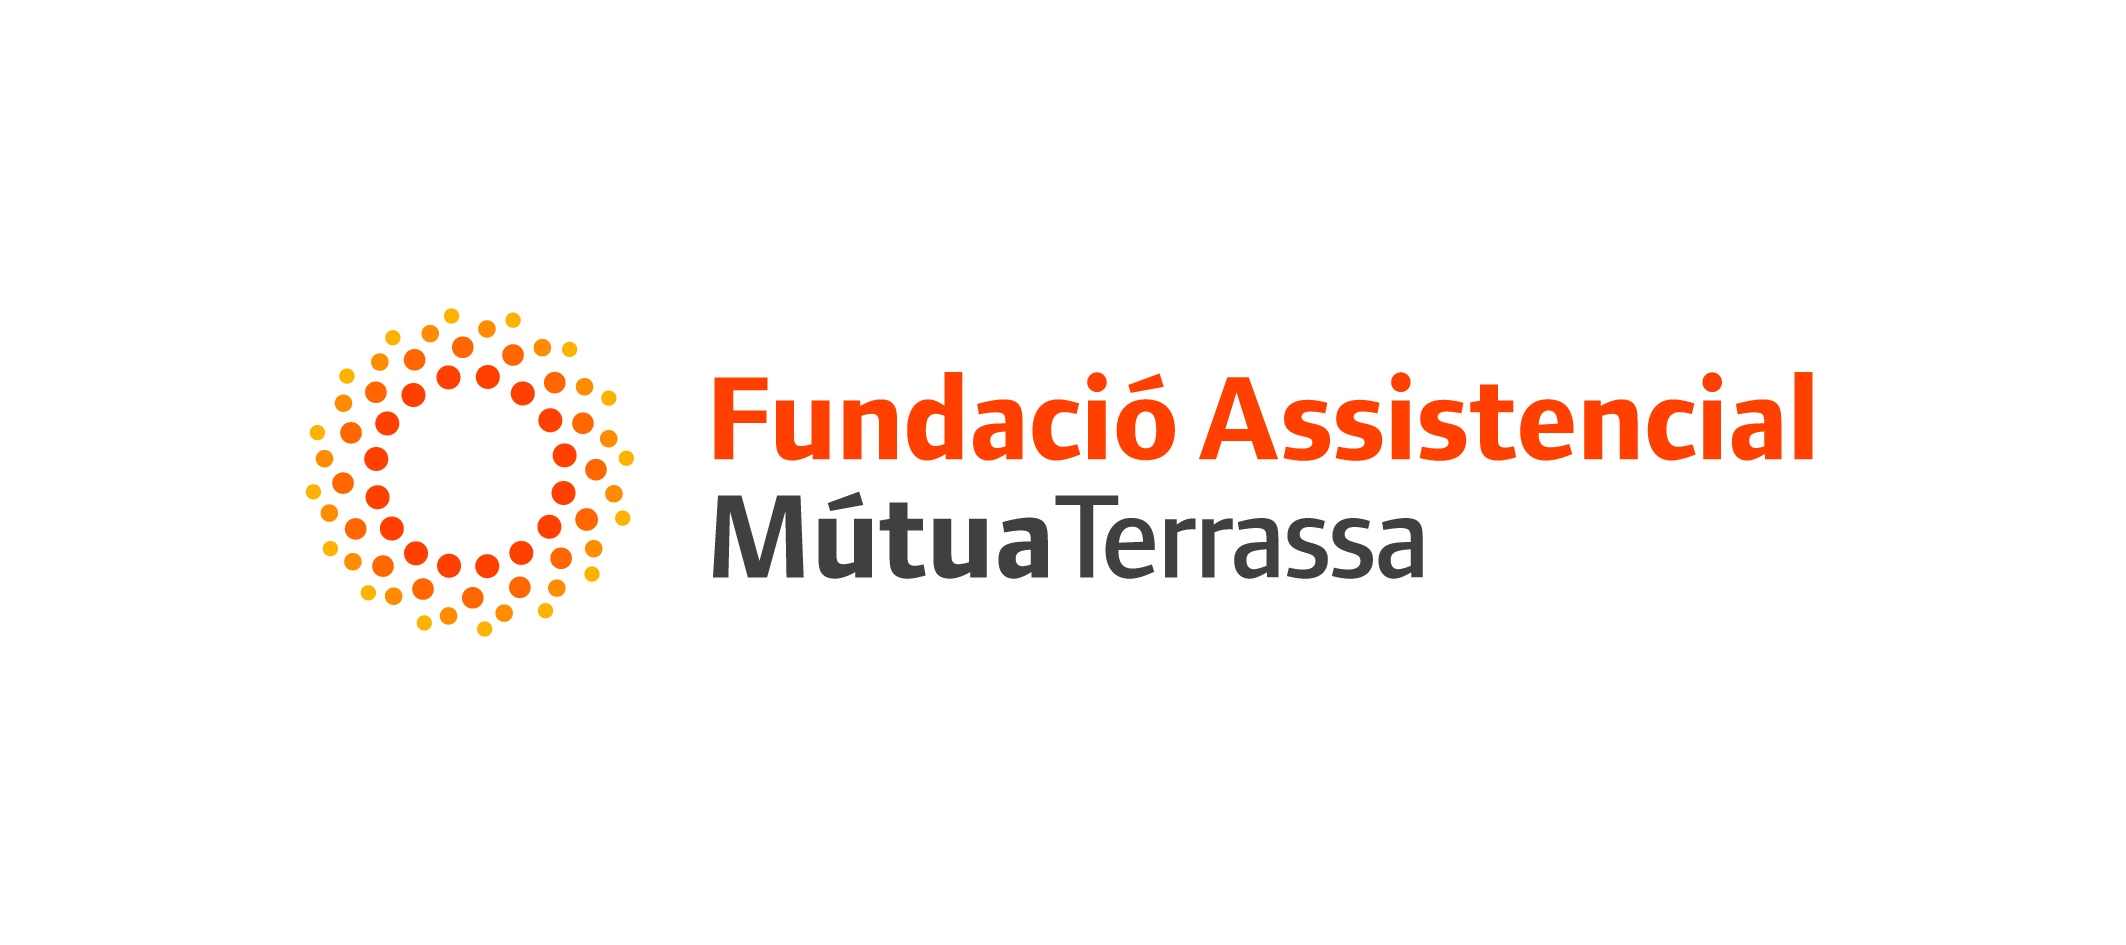 Fundació Assistencial de Mútua de Terrassa, FPC